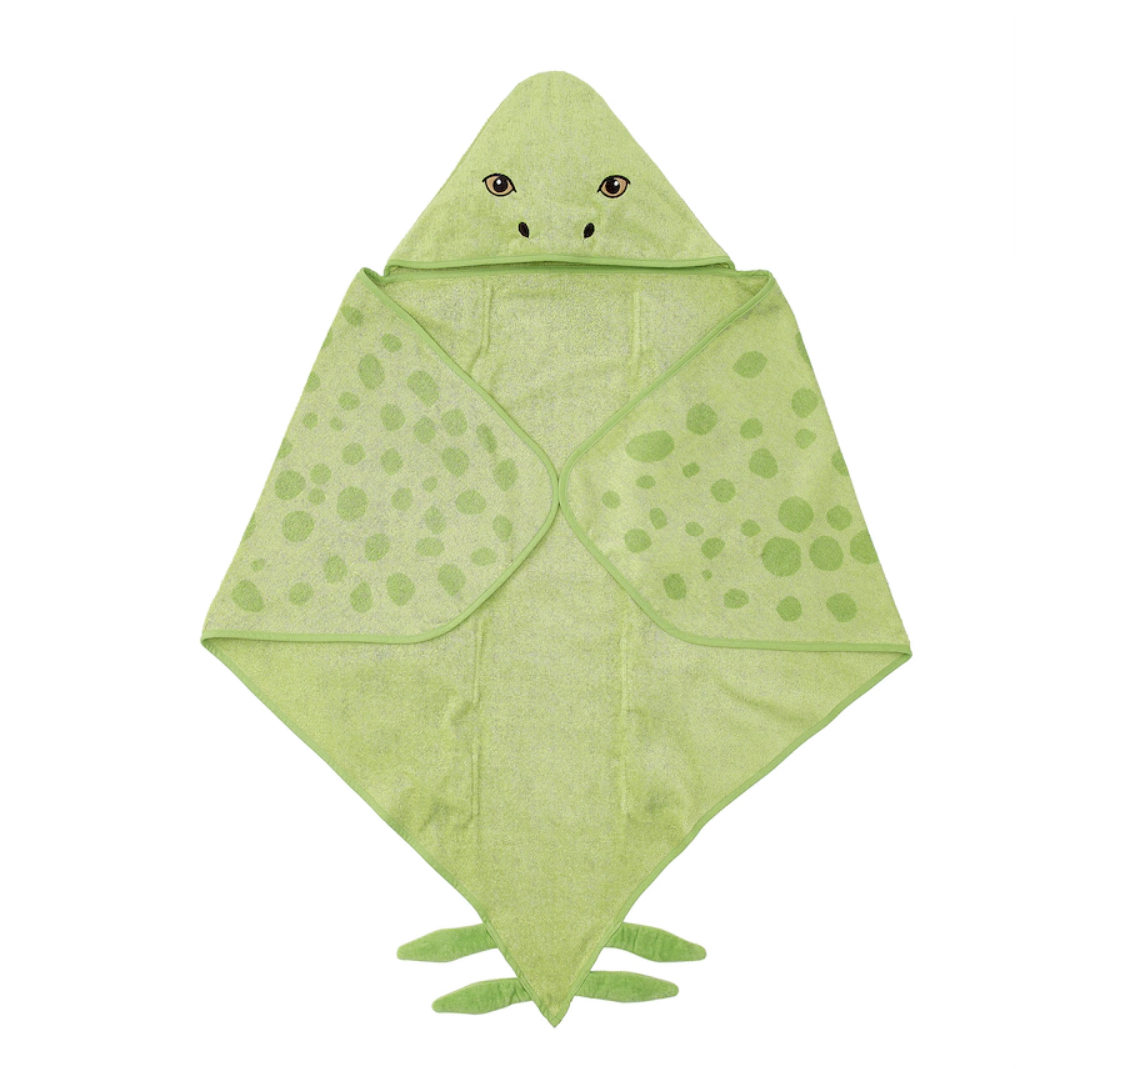 Toddler towel- JÄTTELIK Towel with hood, dinosaur/stegosaurus/green